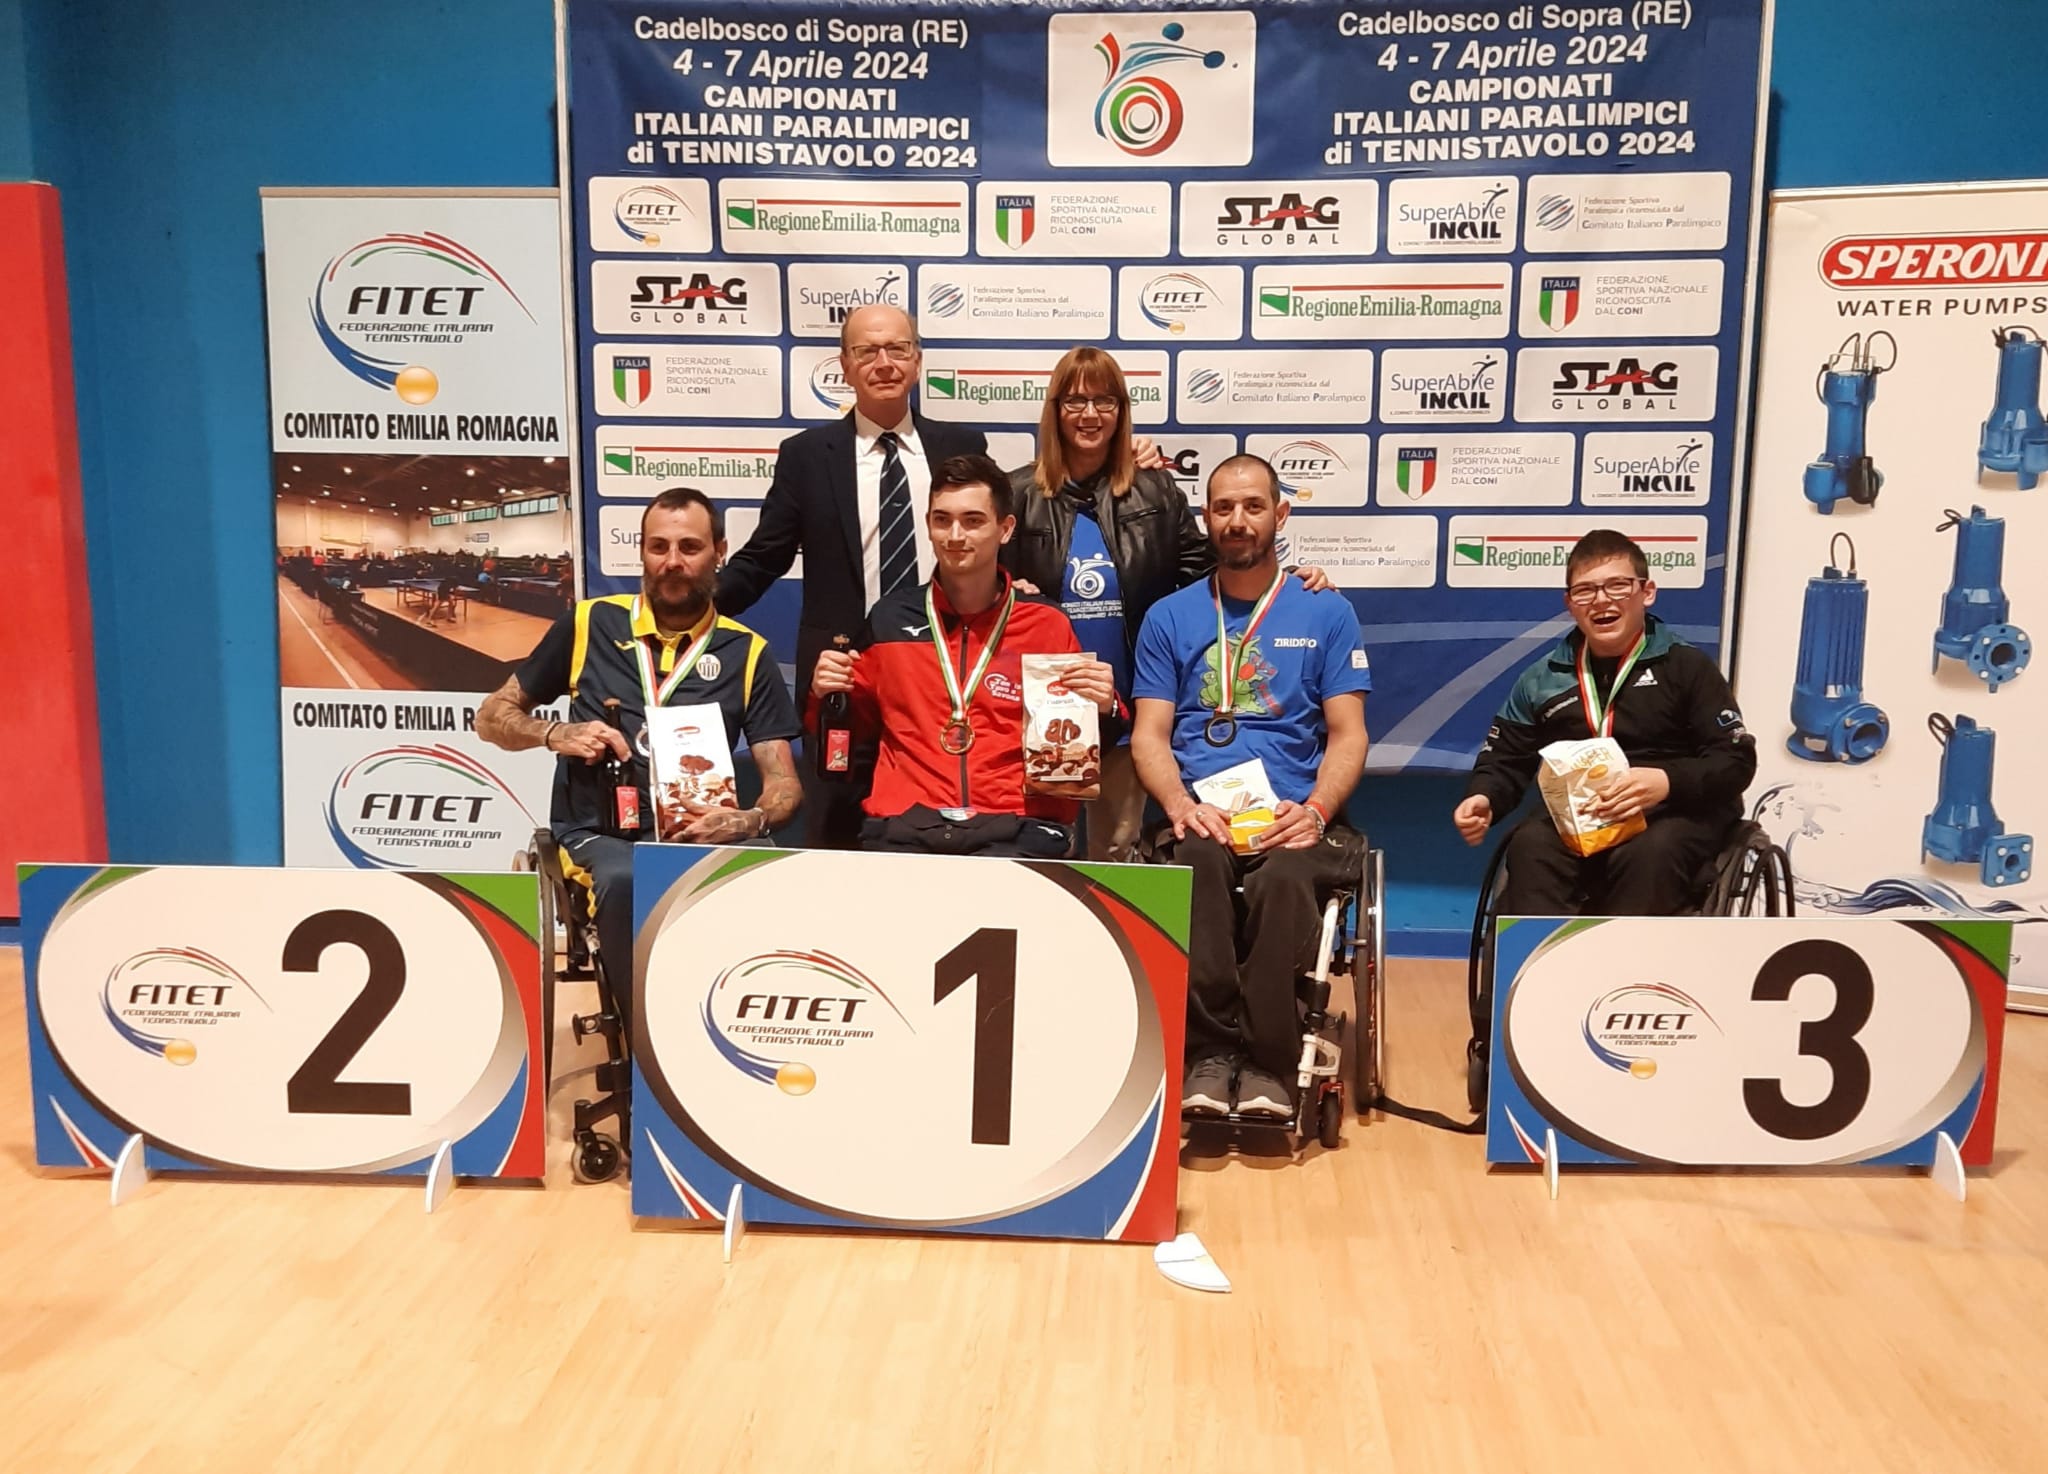 Campionati Italiani Paralimpici di Cadelbosco 2024 podio del singolare maschile di classe 3